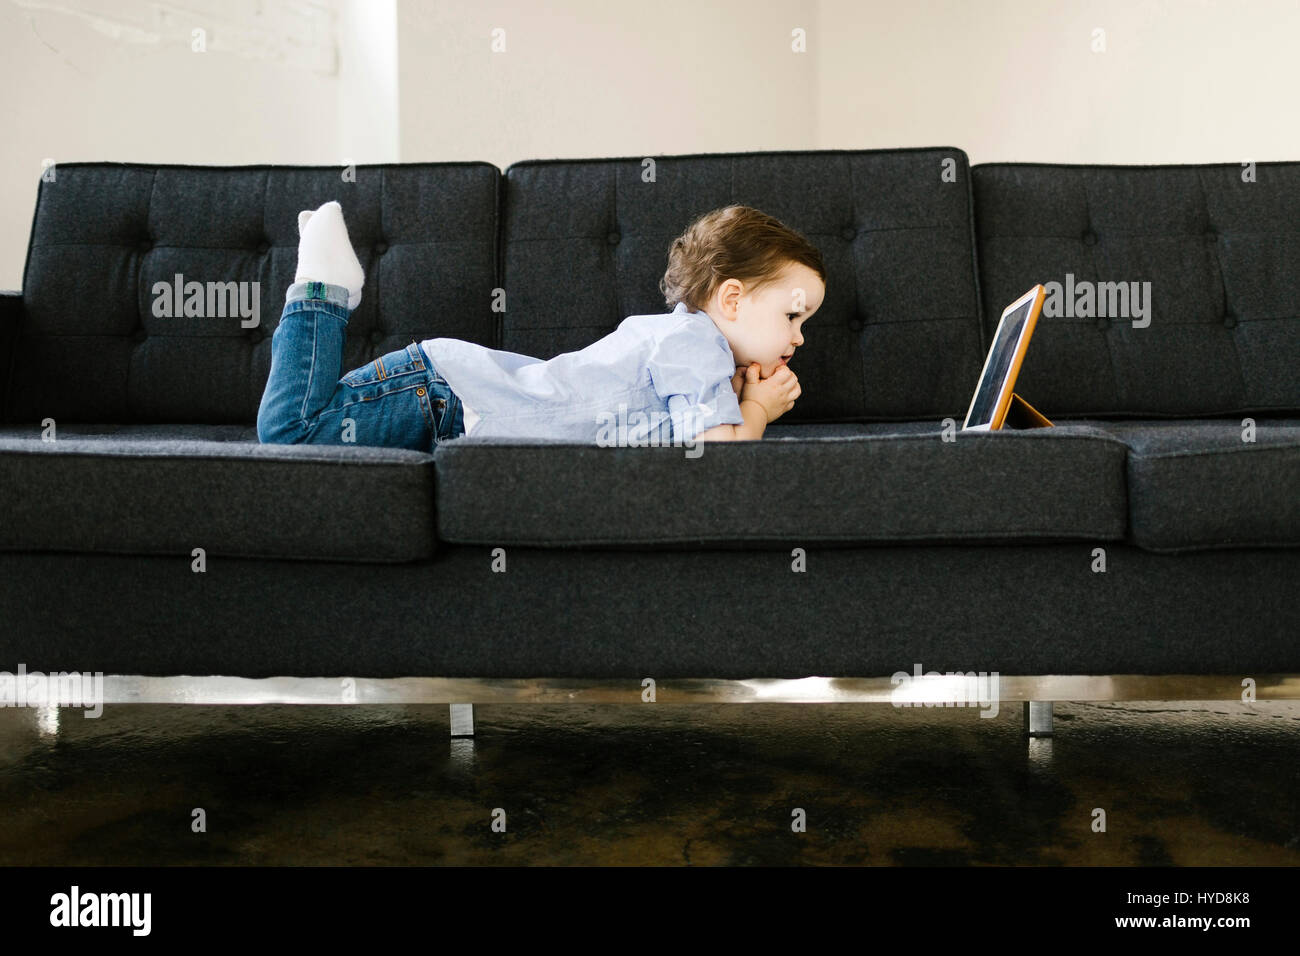 Jeune garçon (4-5) allongé sur un canapé Banque D'Images